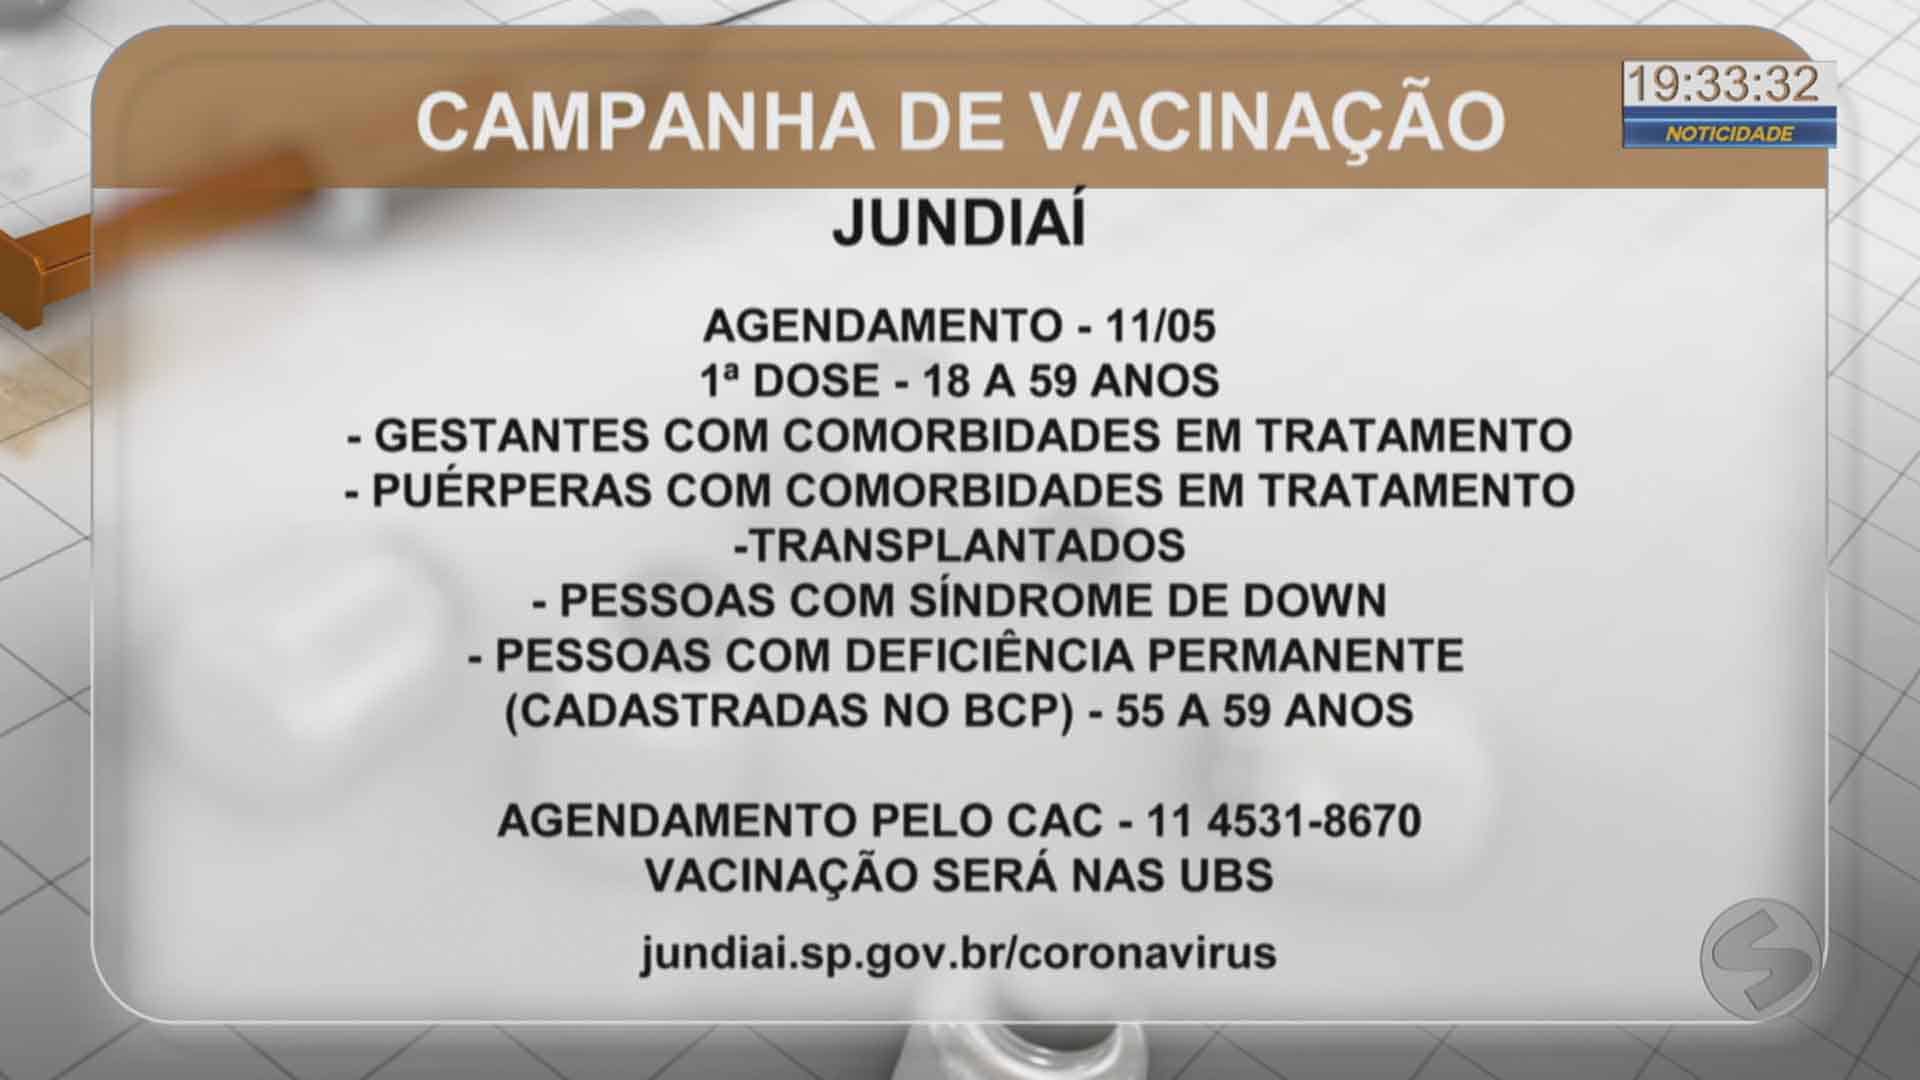 Cidades da região divulgam campanha de vacinação contra a covid